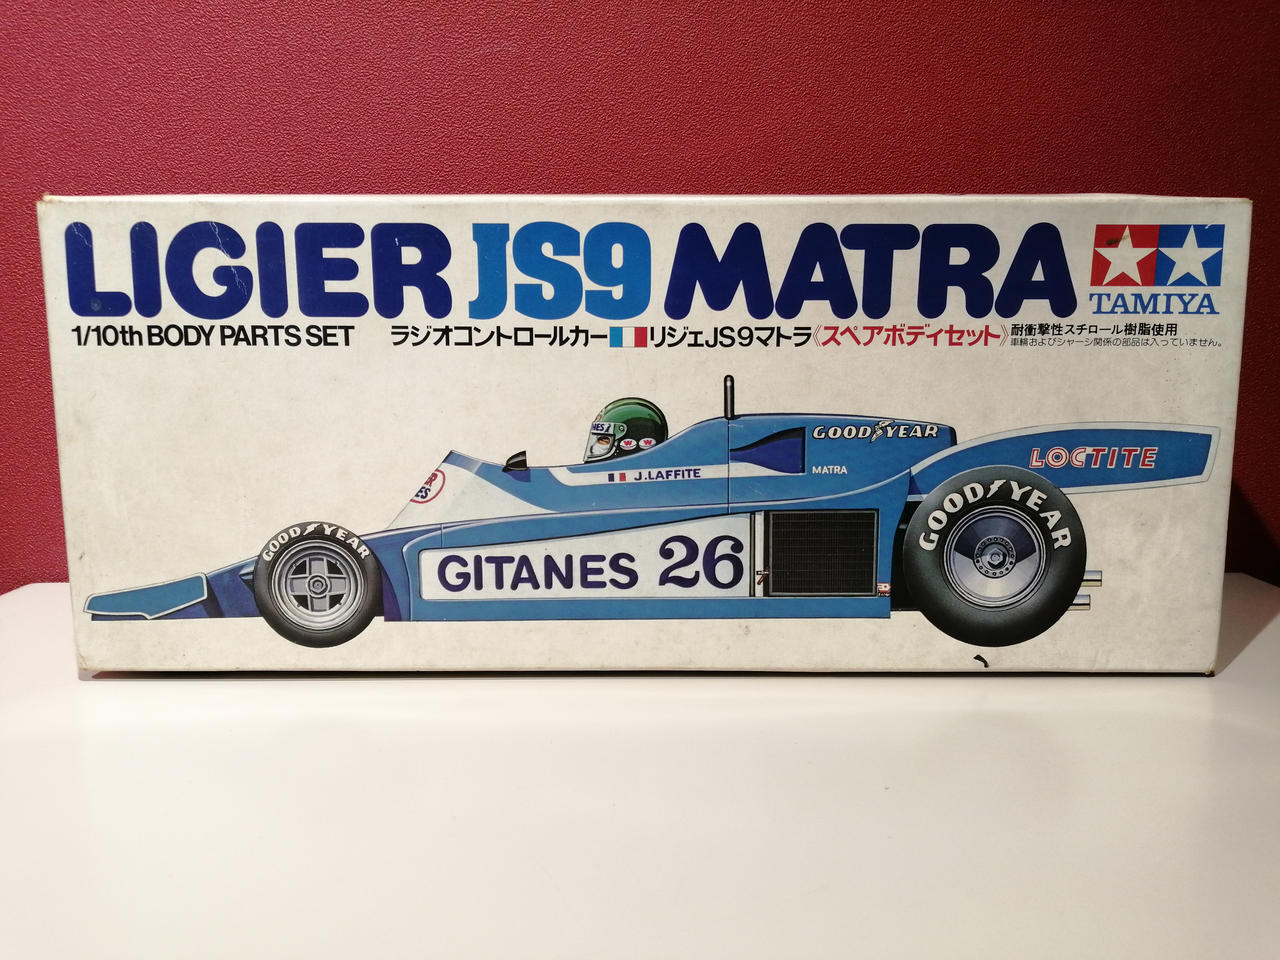 Tamiya Ligier Js9 Matra